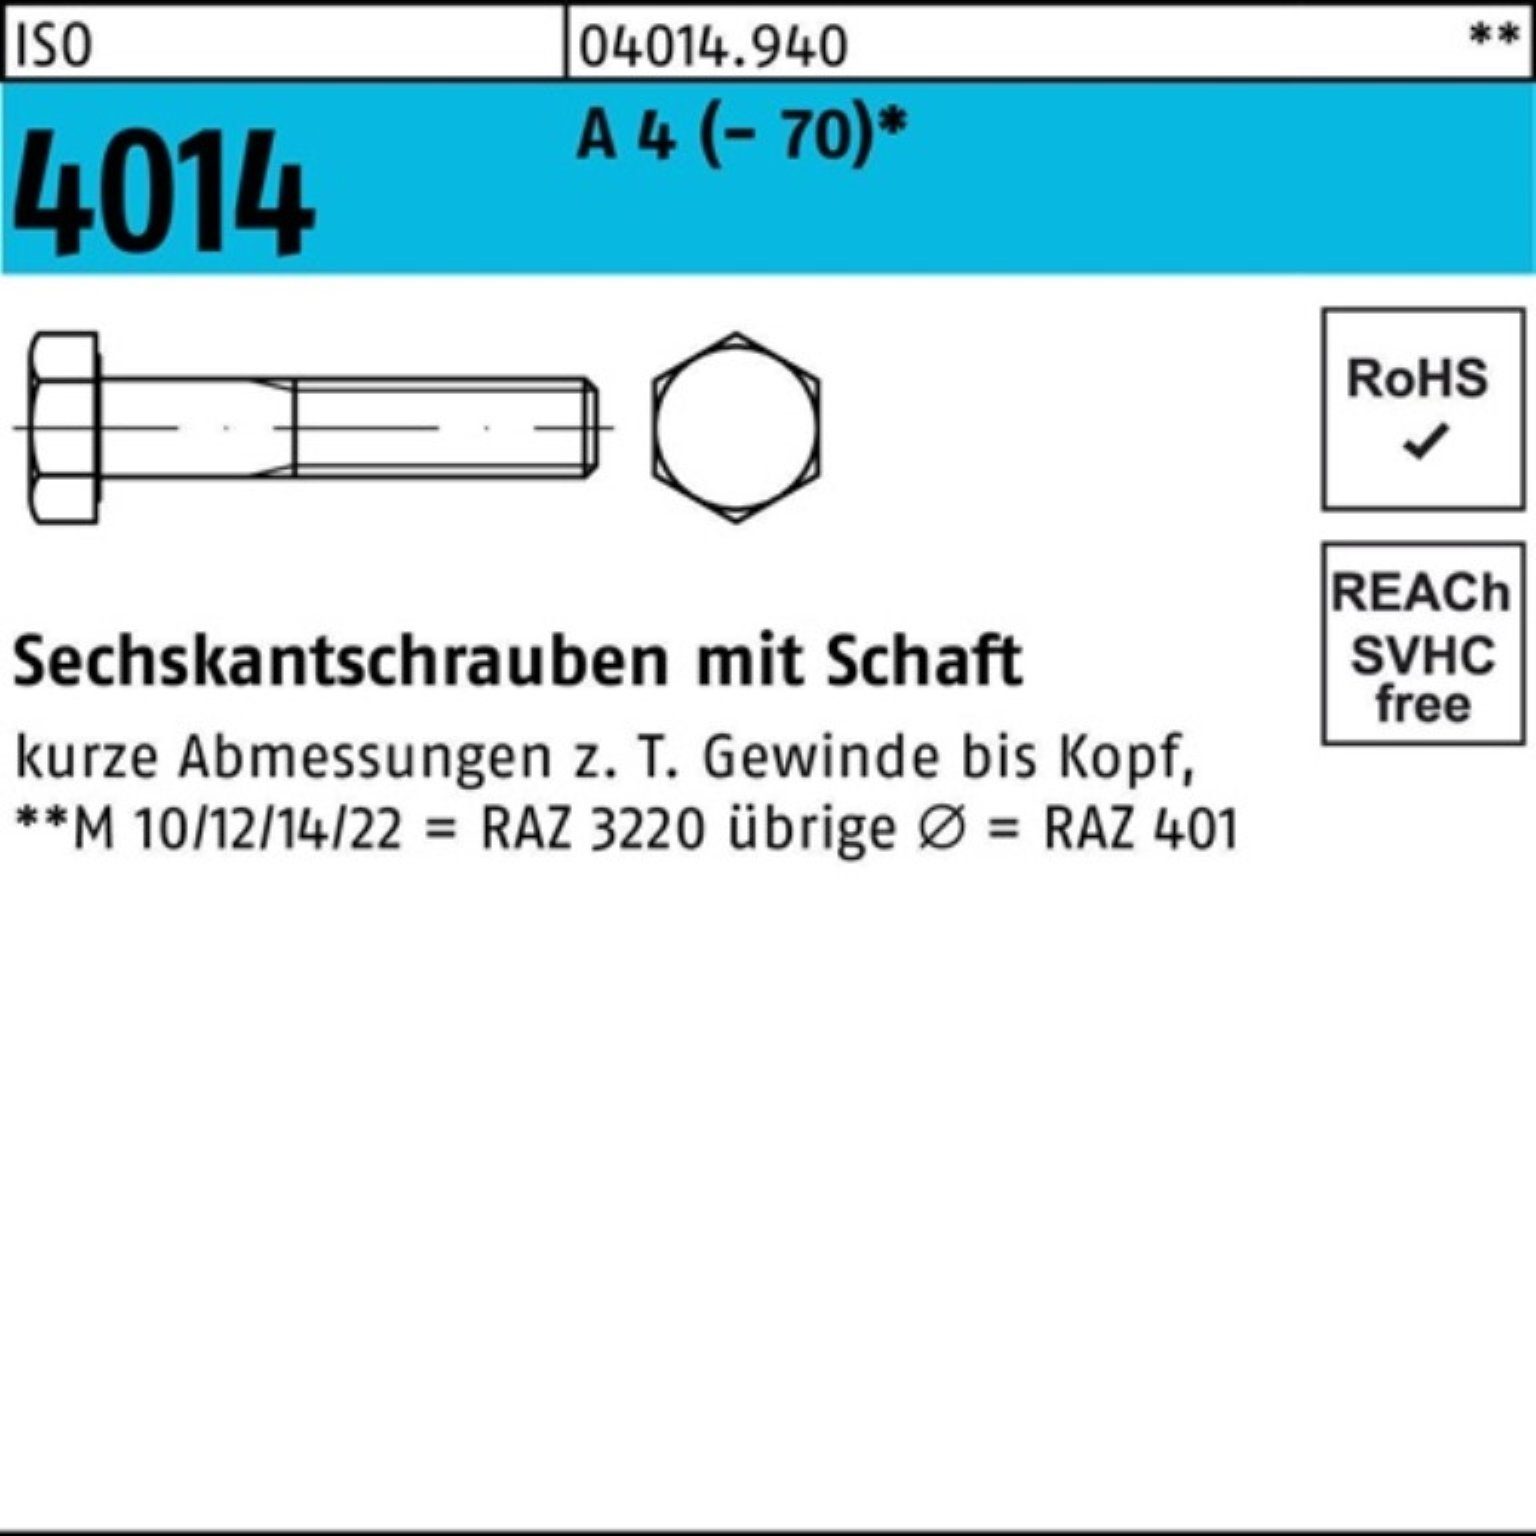 Bufab Sechskantschraube 100er Pack Sechskantschraube ISO 4014 Schaft M8x 160 A 4 (70) 1 Stü